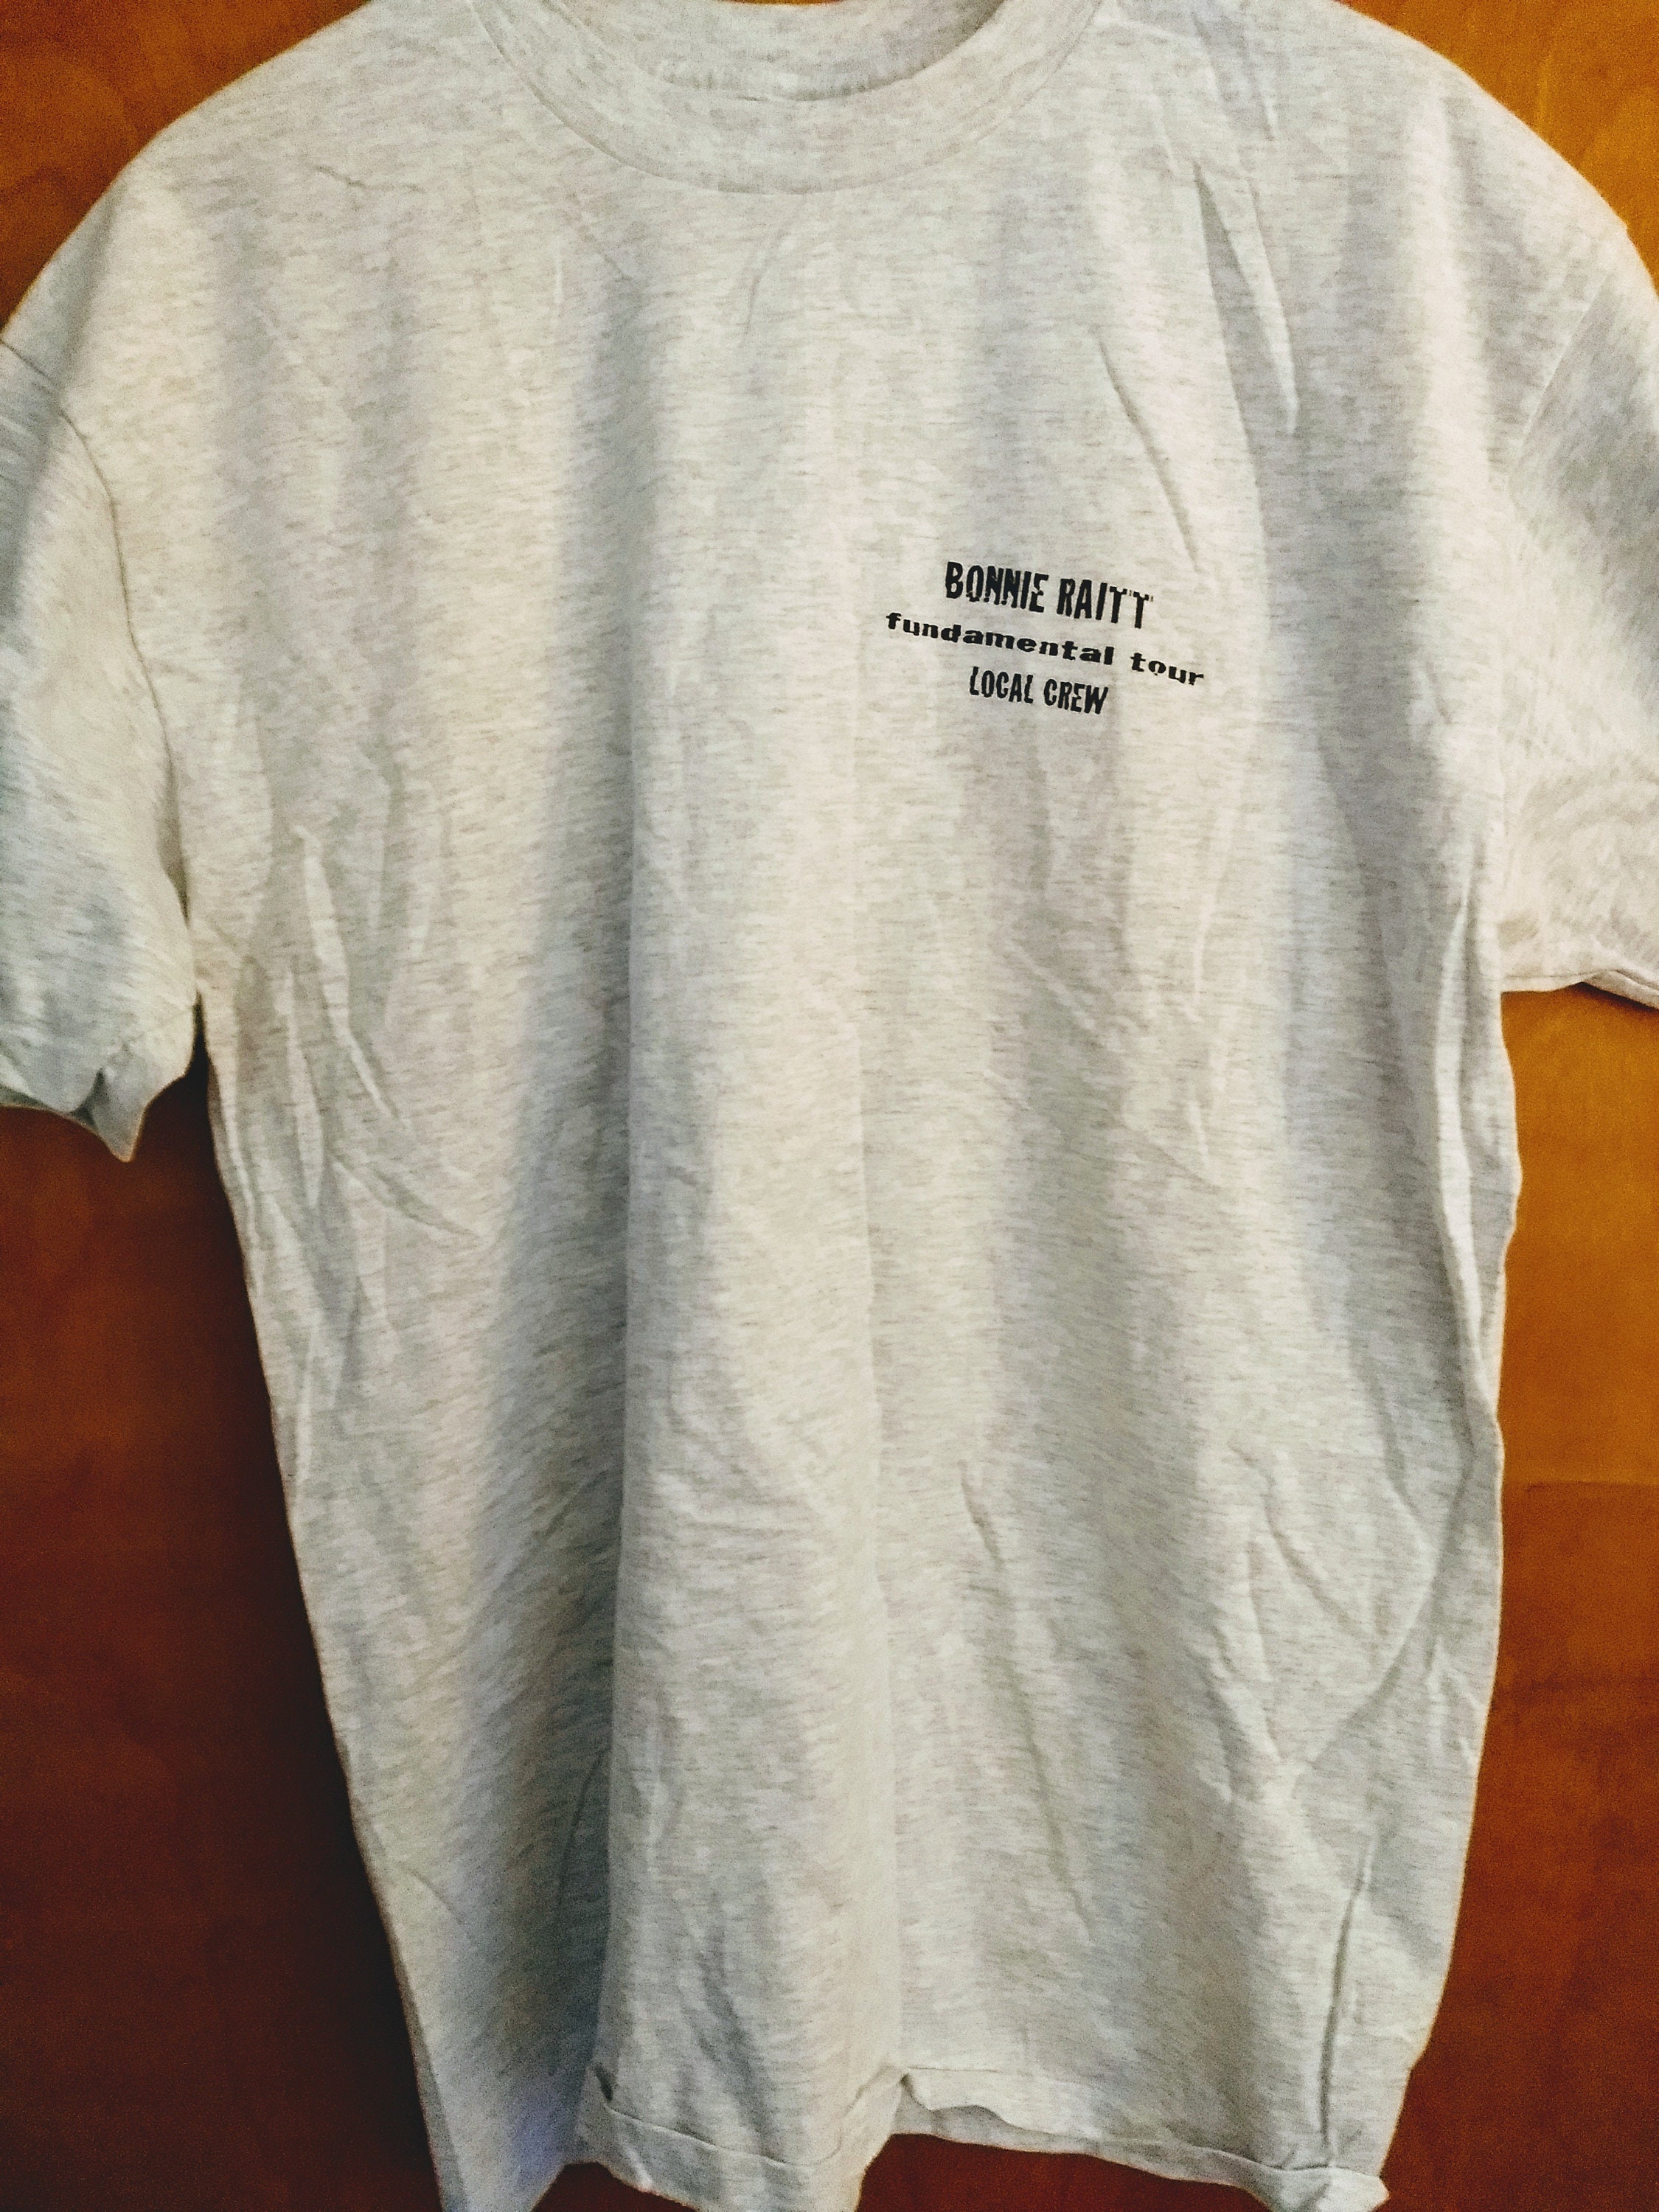 Bonnie Raitt Concert Crew T Shirt! Authentic Vintage 1998! Bonnie Raitt ...